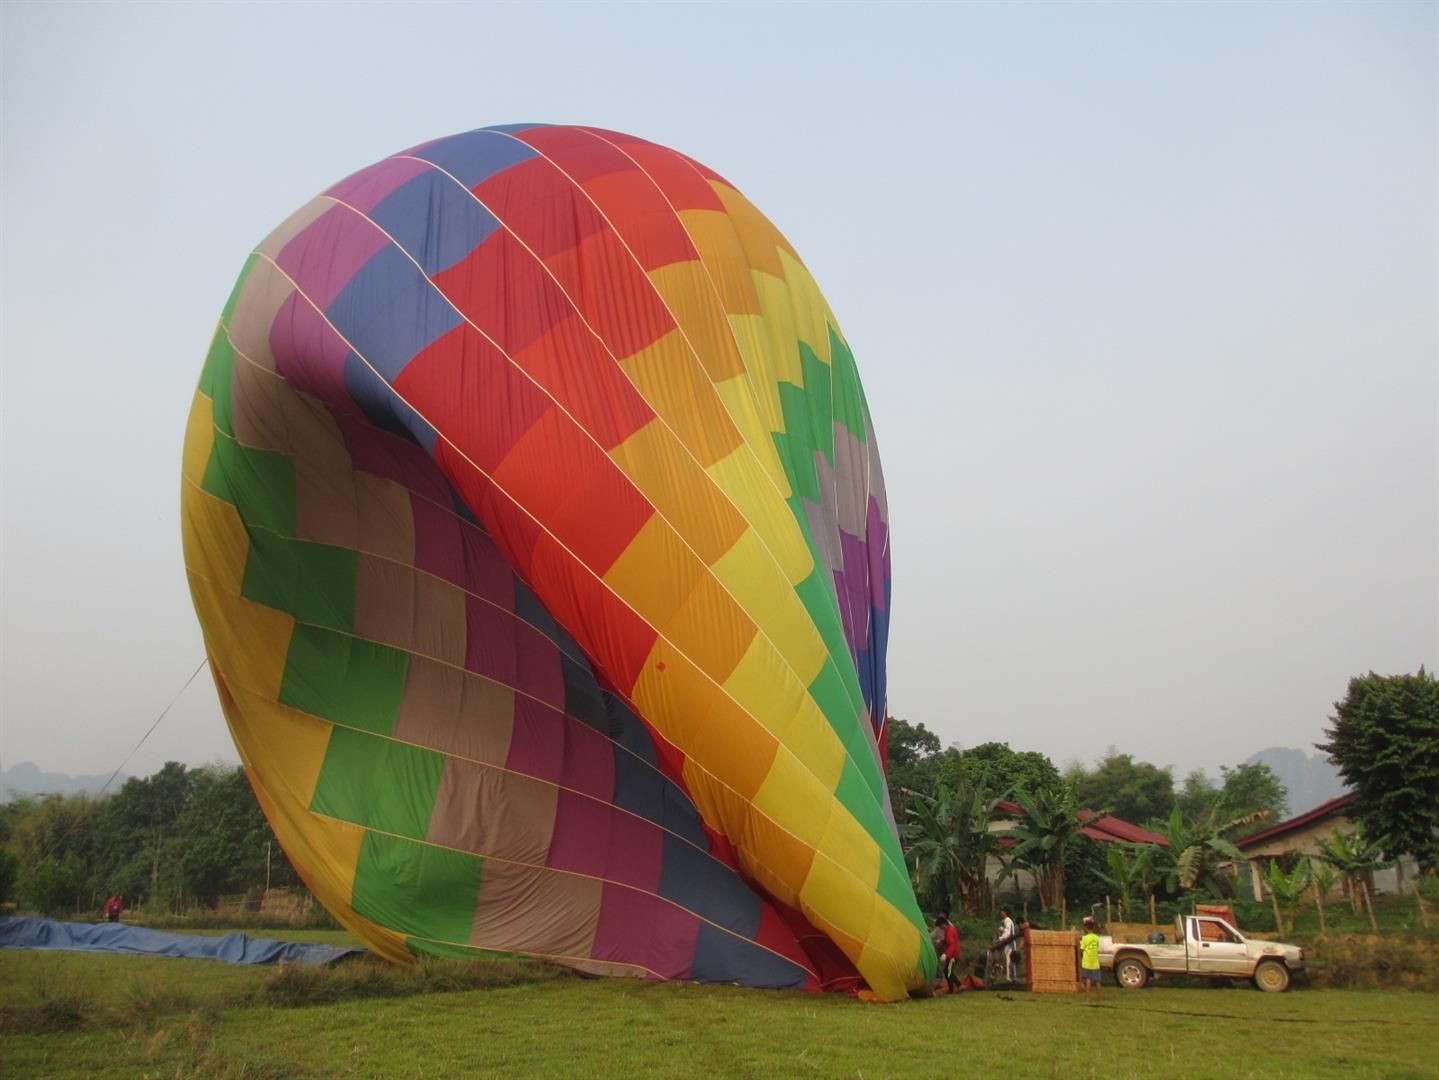  photo Vang-Vieng-hot-air-balloon-laos-3_zps7z1h51ph.jpg